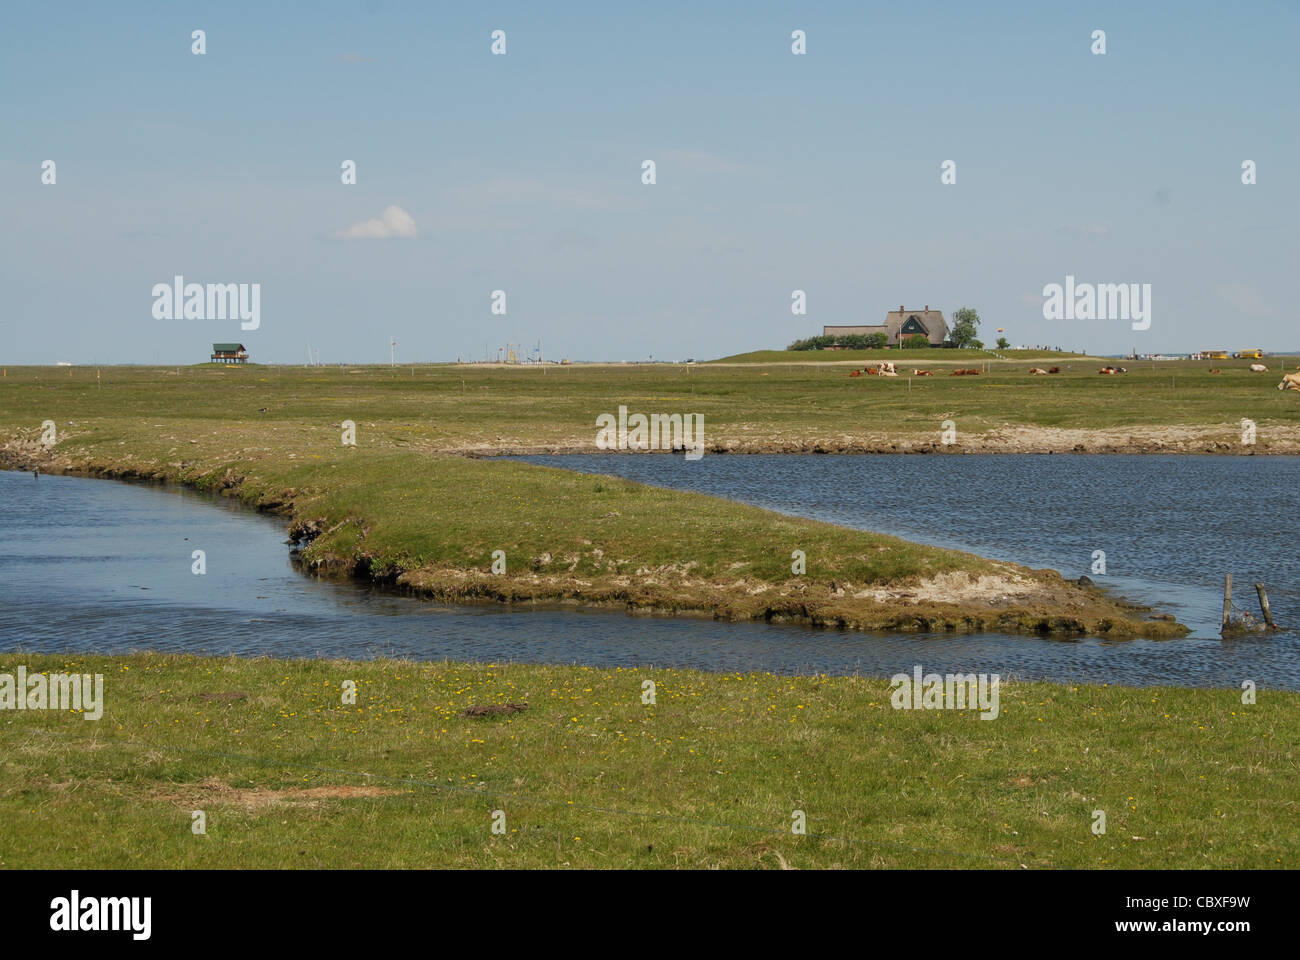 Auf Hallig Hooge, einer kleinen Insel in der Wadden Meer von Nordfriesland, sind alle Häuser auf künstlichen irdenen Grabhügel genannt Warft errichtet. Stockfoto